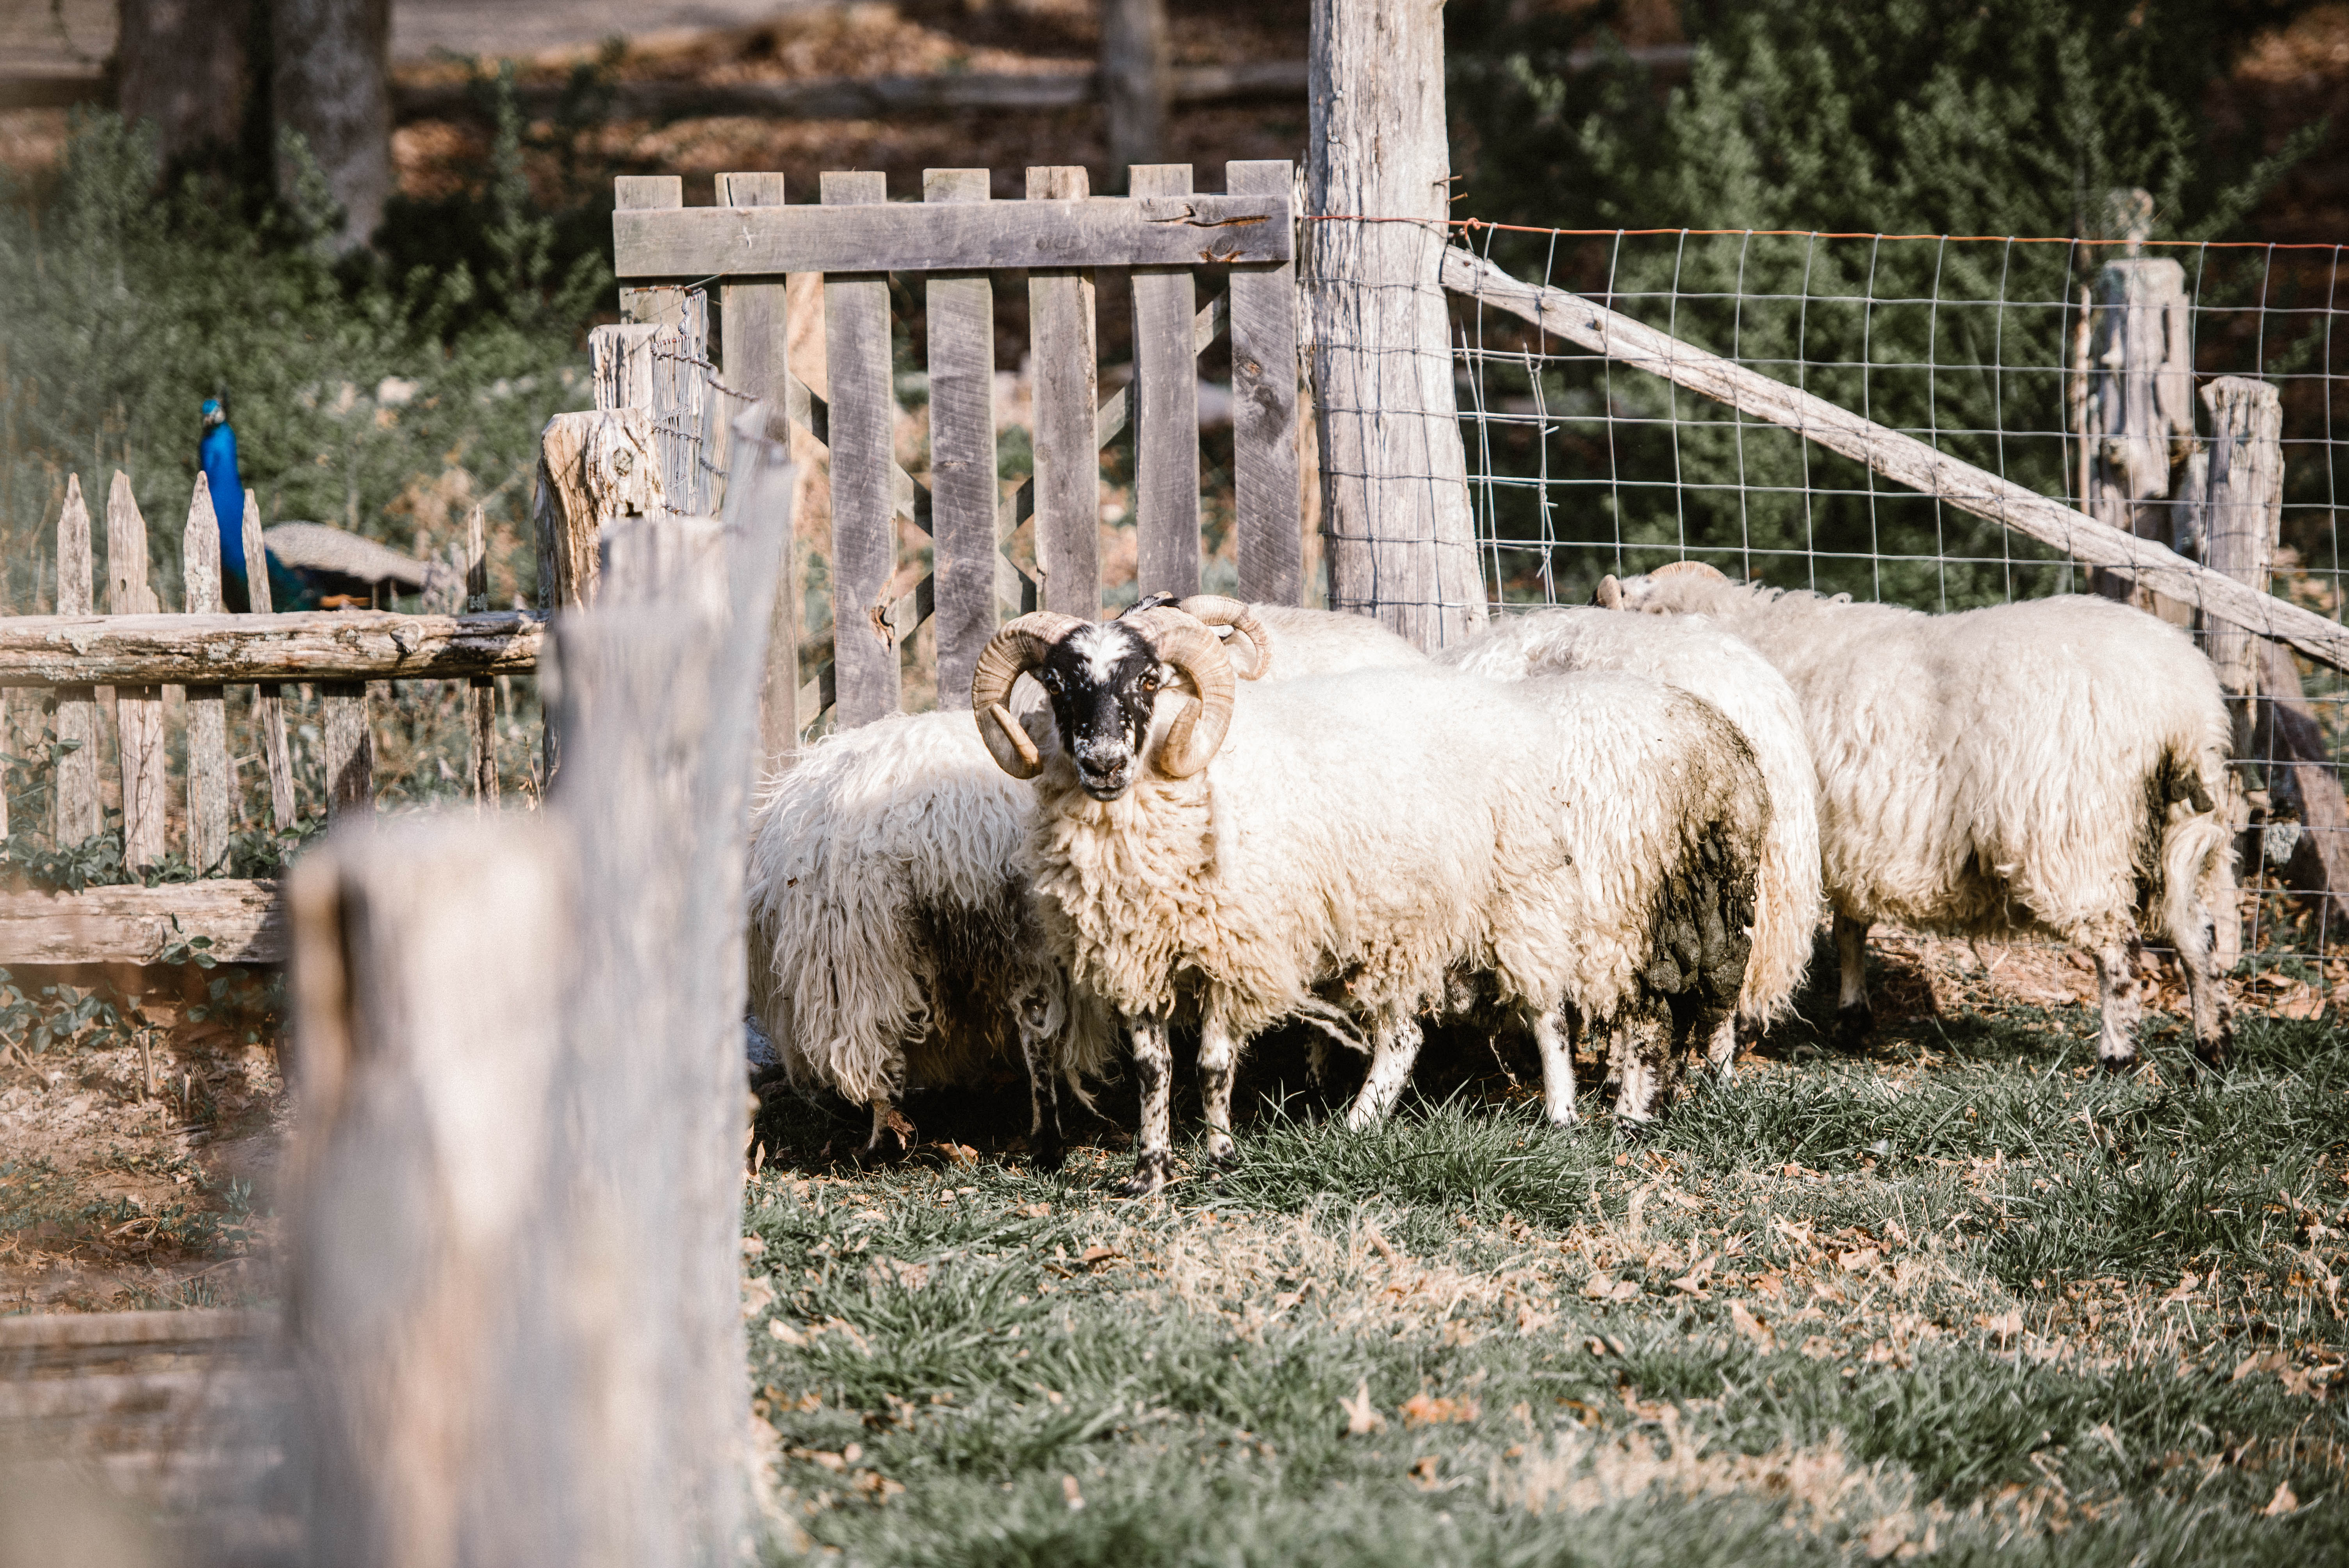 Sheep Shearing Day - The Museum Of Appalachia